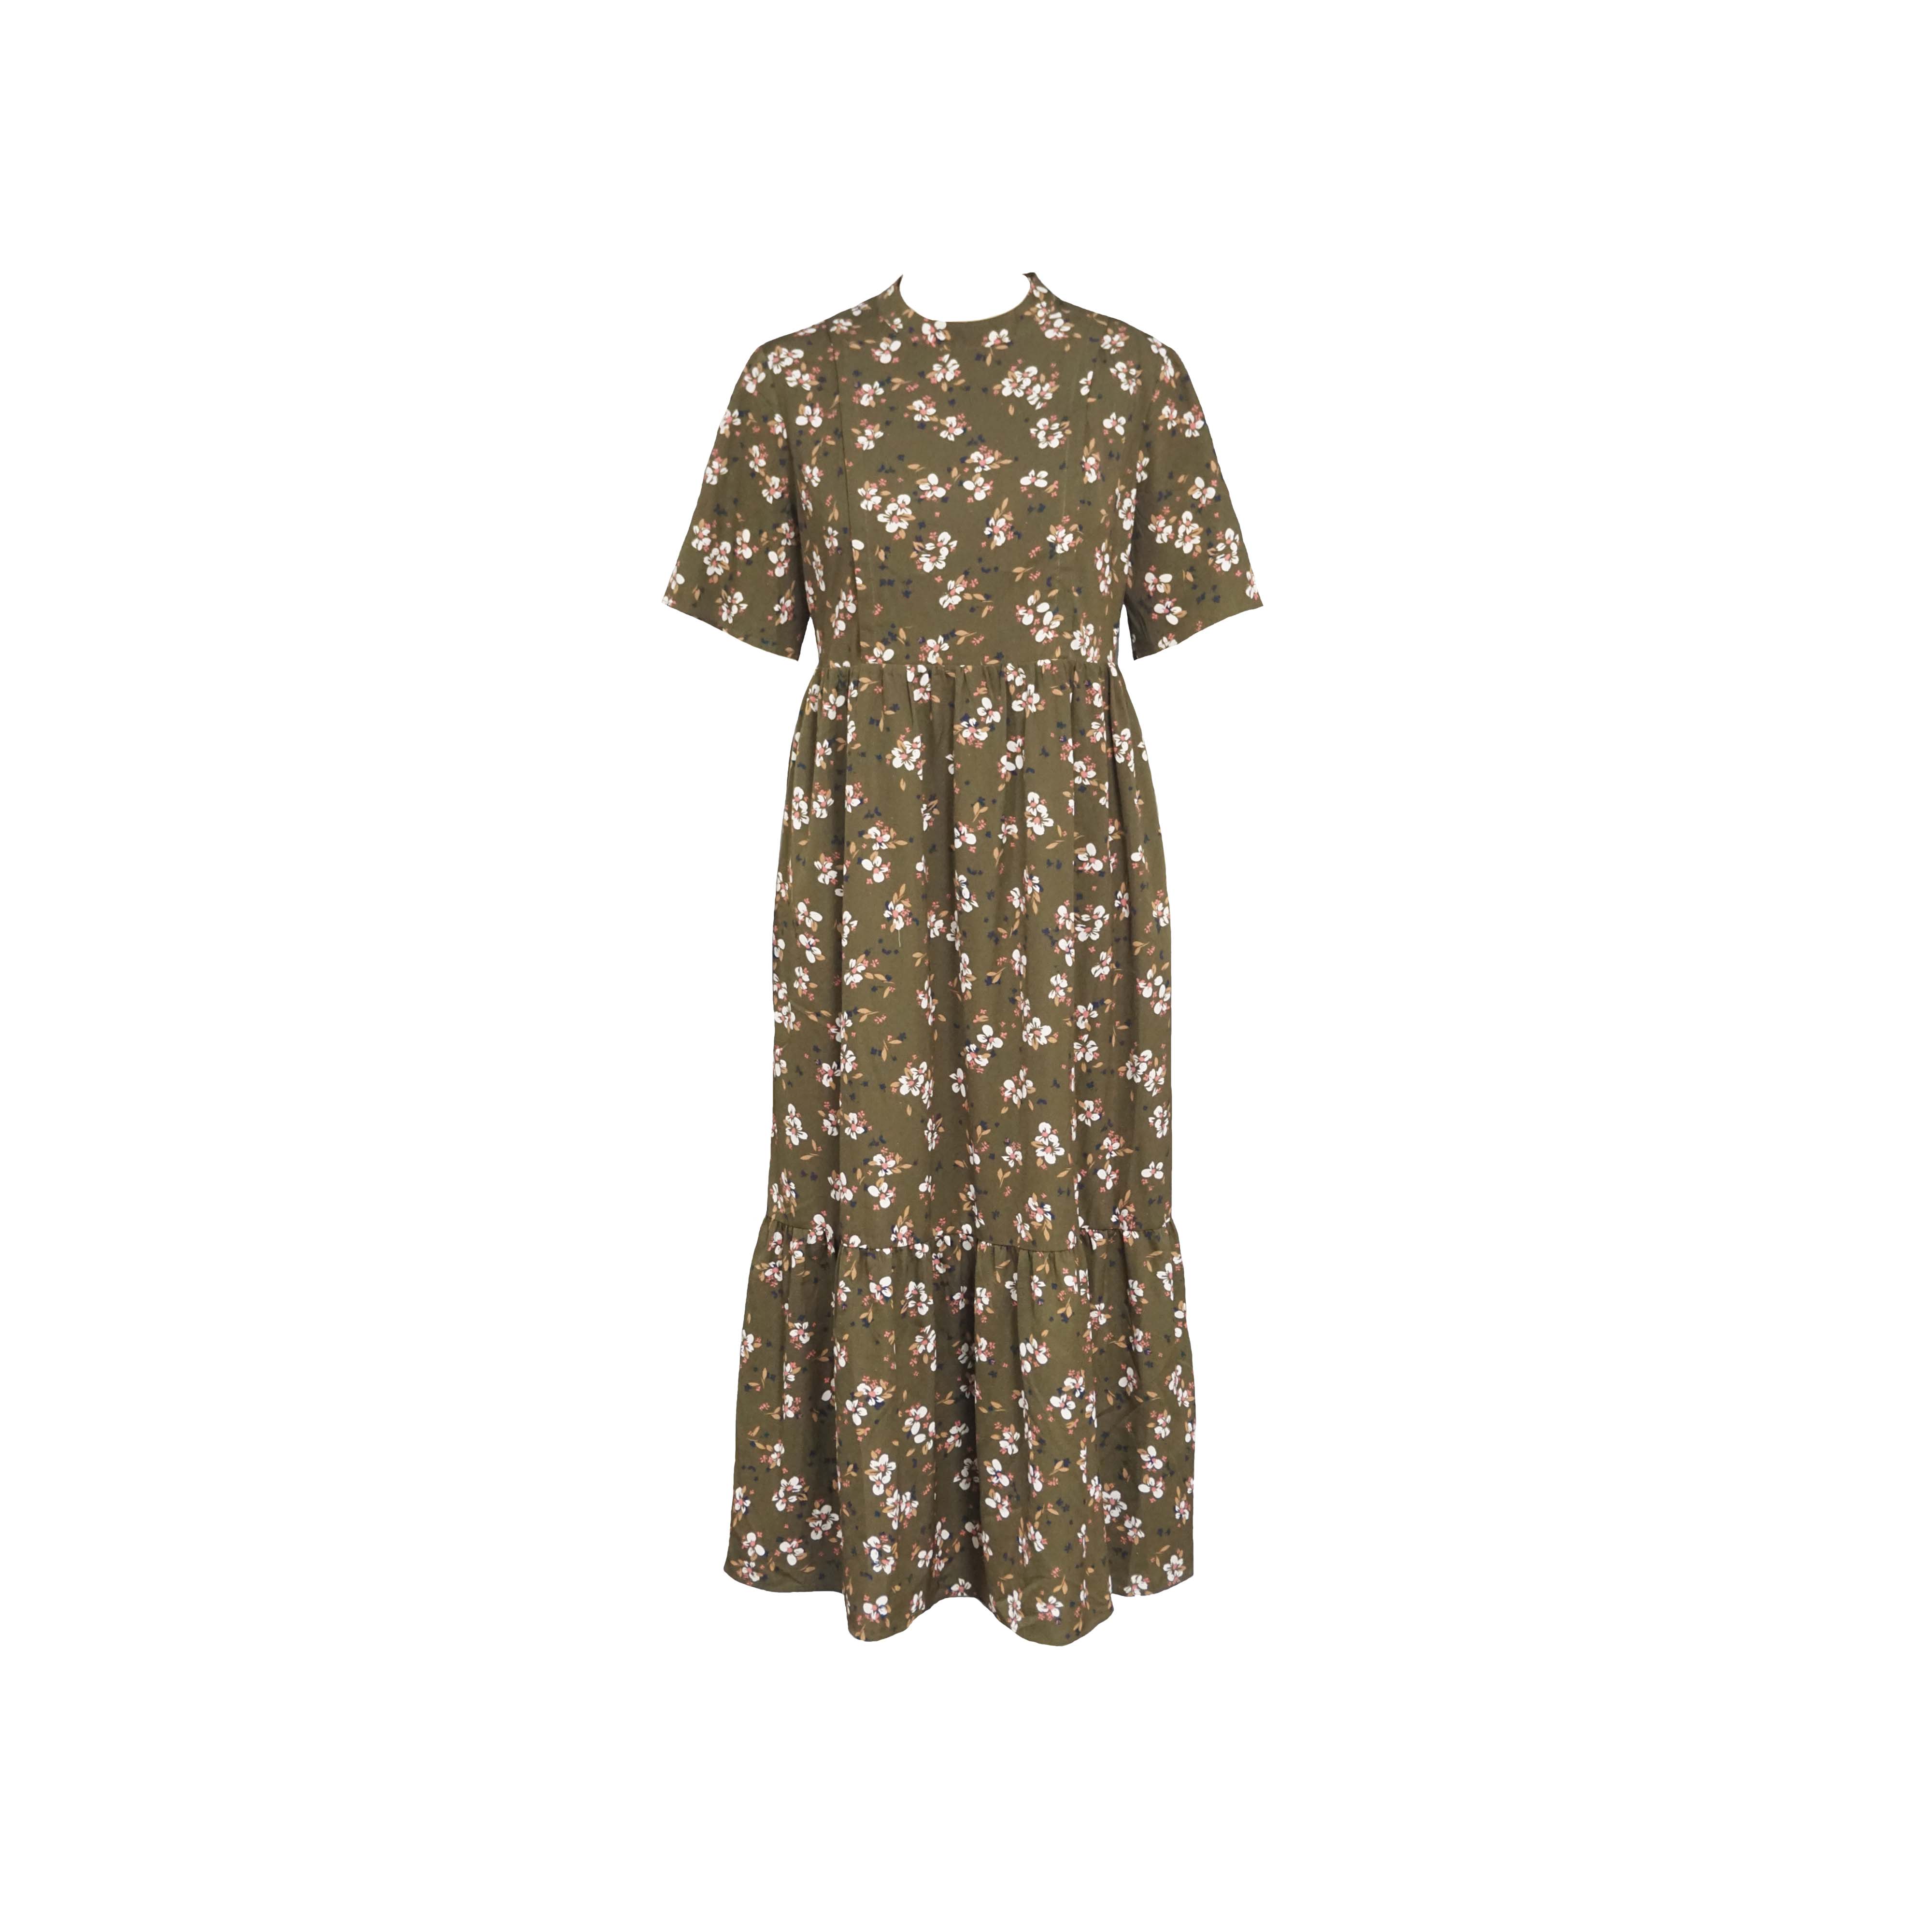 Maslinastozelena haljina za dojenje s okruglim izrezom i cvjetnim rukavima u obliku zvona